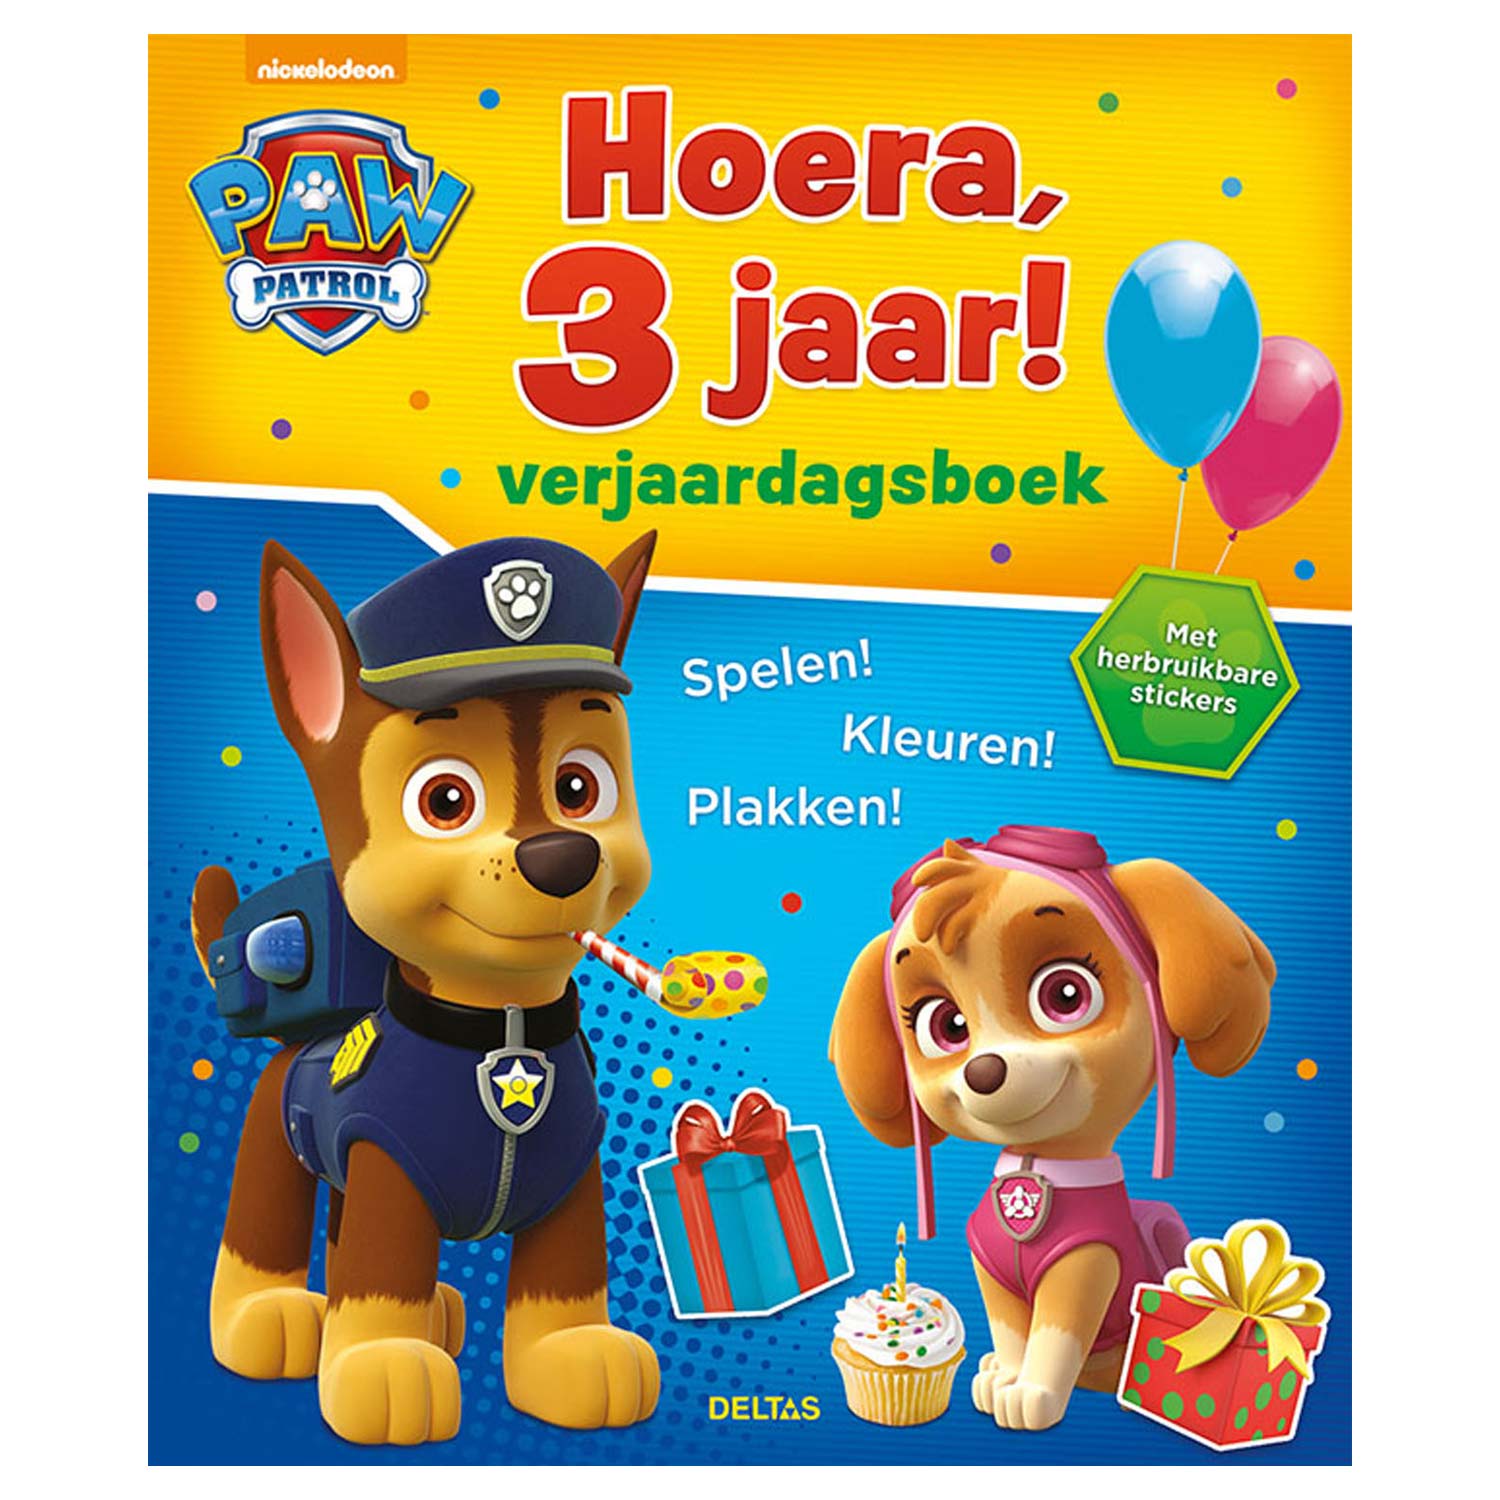 PAW Patrol Verjaardagsboek - Hoera, 3 jaar!